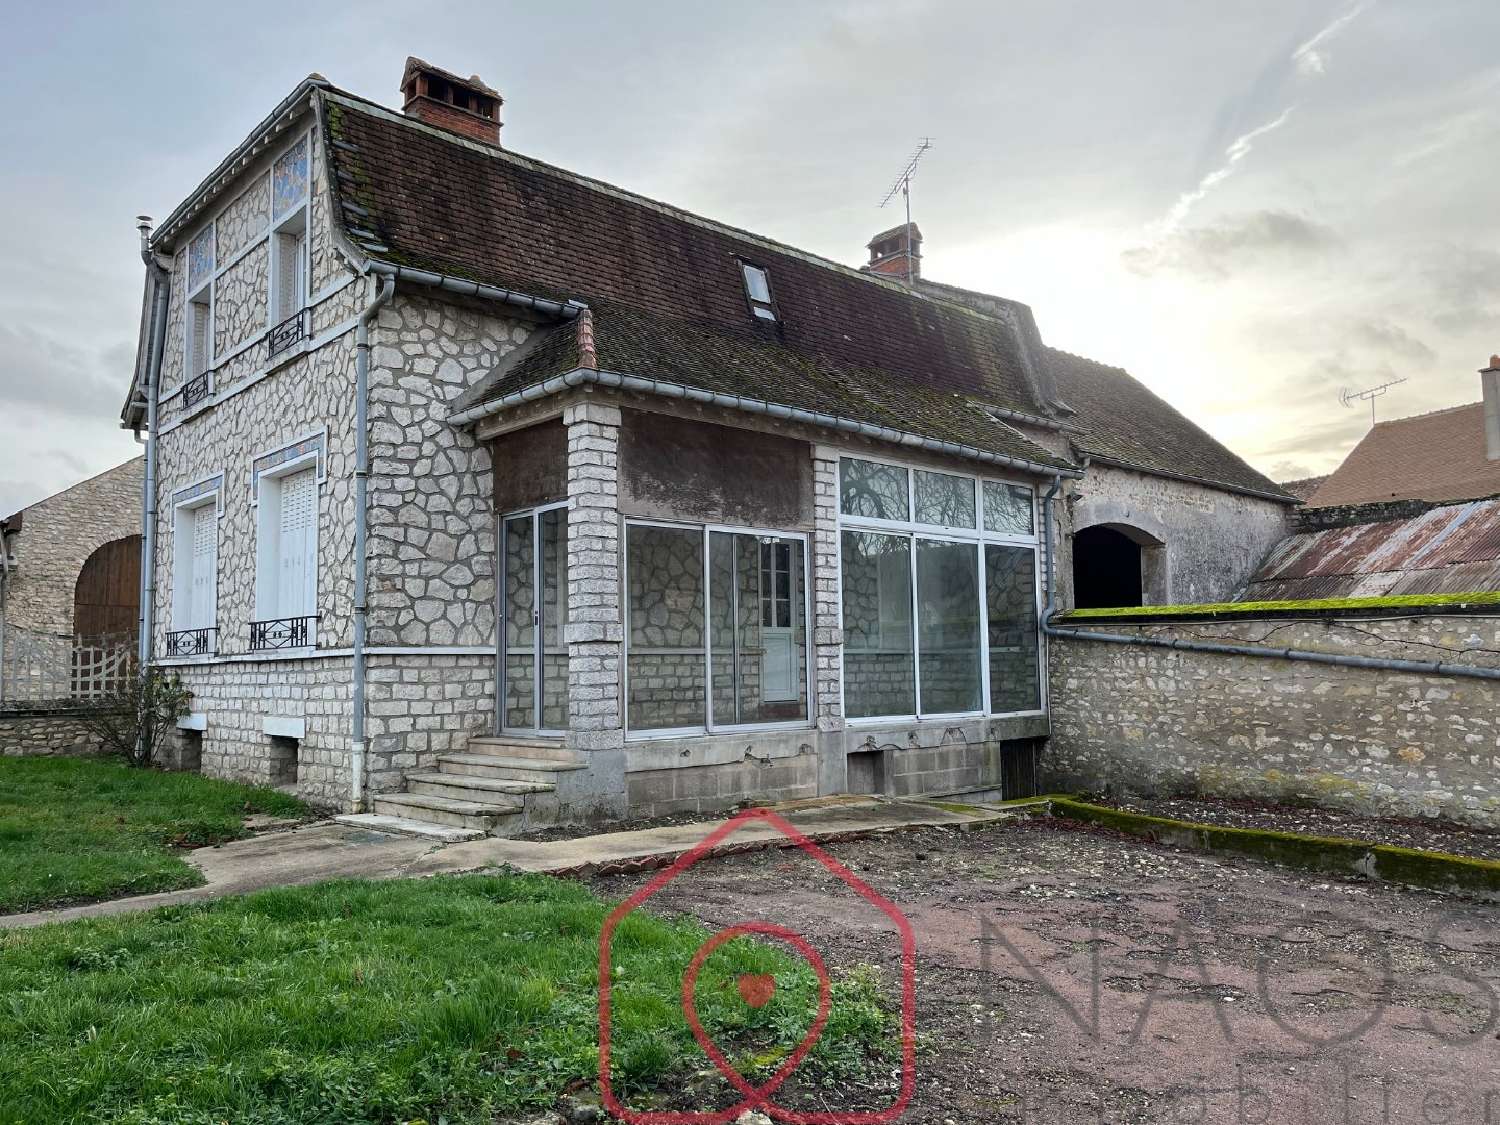  à vendre maison Saint-Pierre-lès-Nemours Seine-et-Marne 1